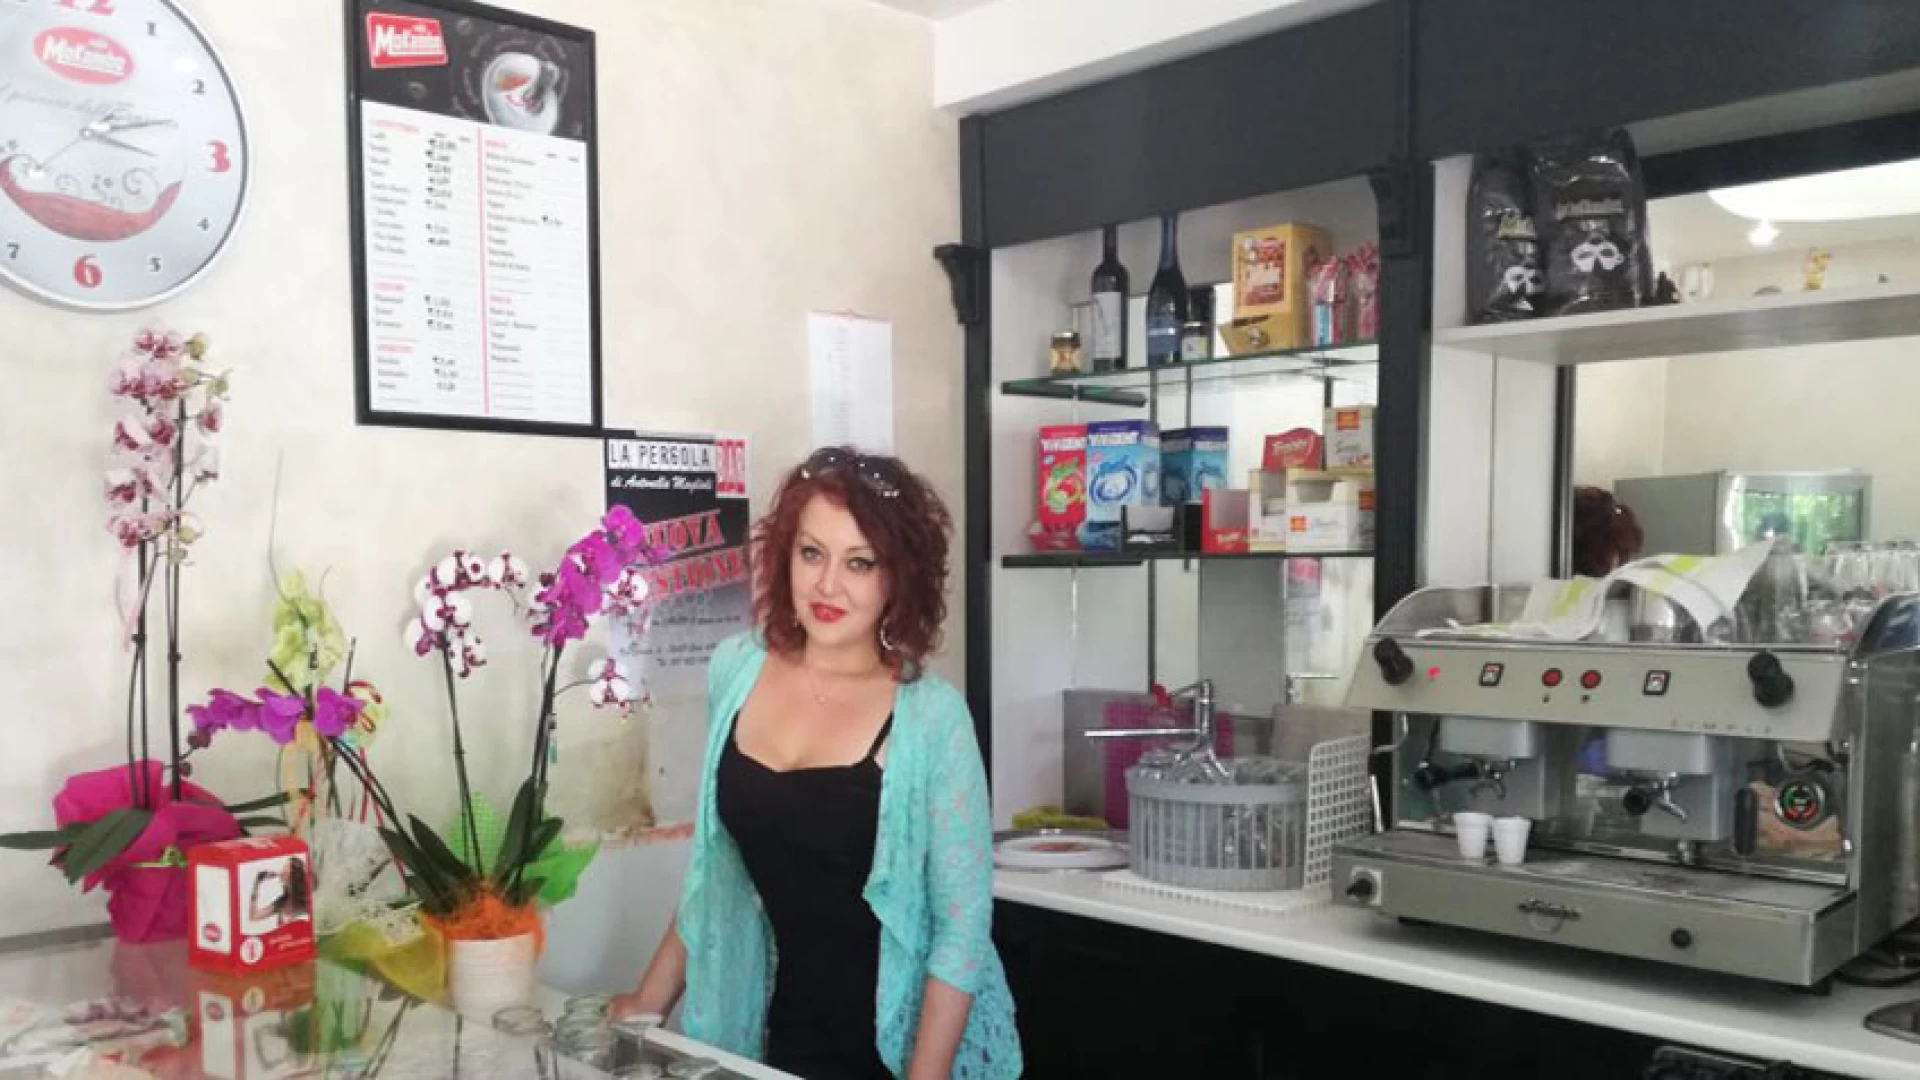 Colli a Volturno: Antonella Maglioli realizza il suo sogno. La nuova gestione del Bar La Pergola già attira i clienti.